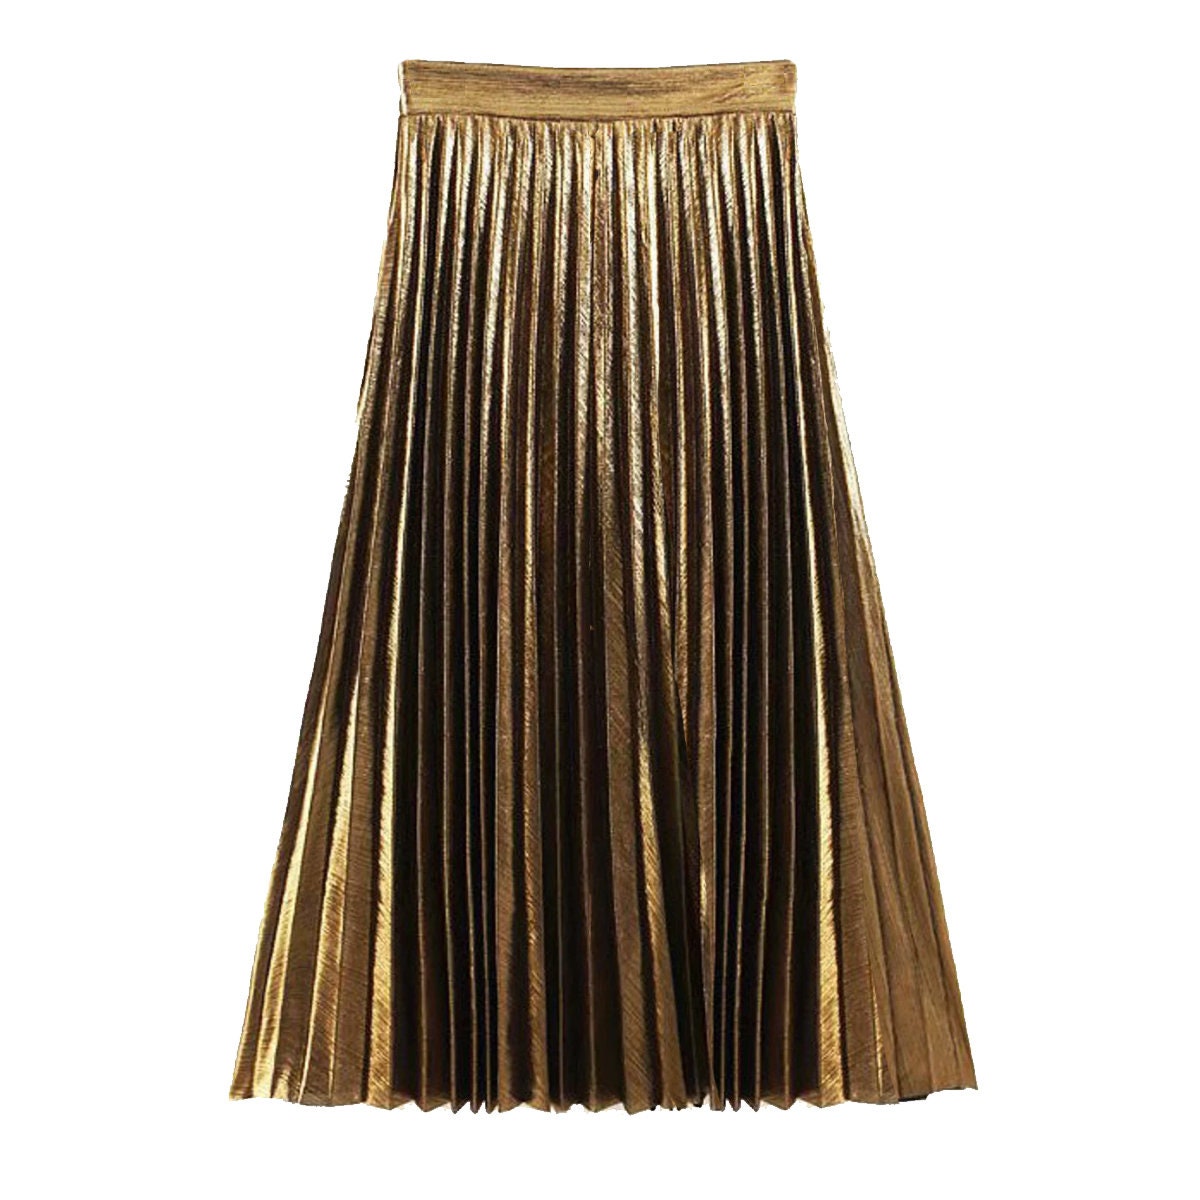 Metallic Gold Pleated Midi Skirt Gold Midi Skirt Metallic - Etsy